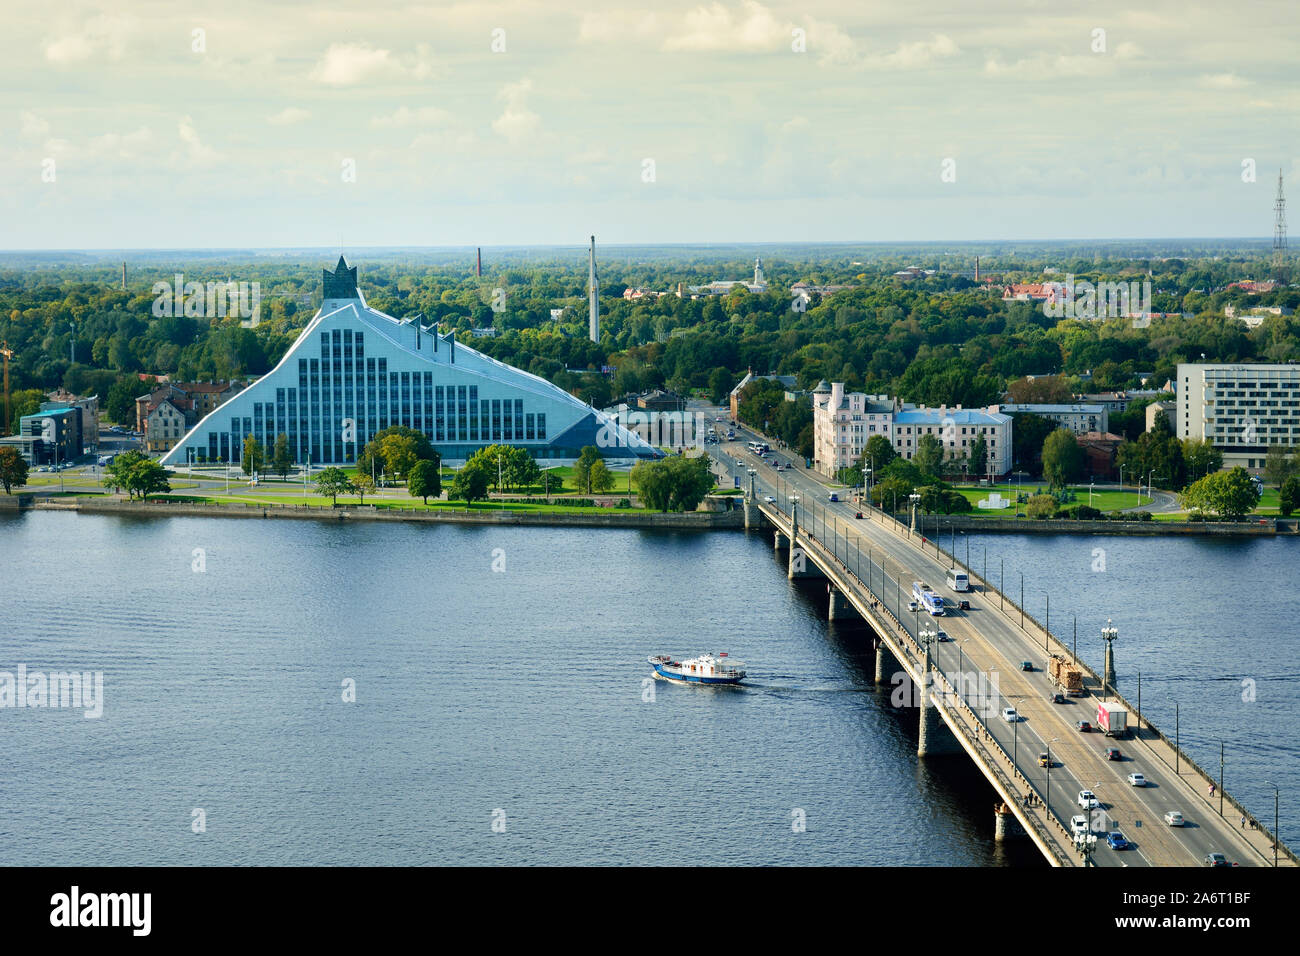 The National Library of Latvia and the Daugava river. Riga, Latvia Stock Photo